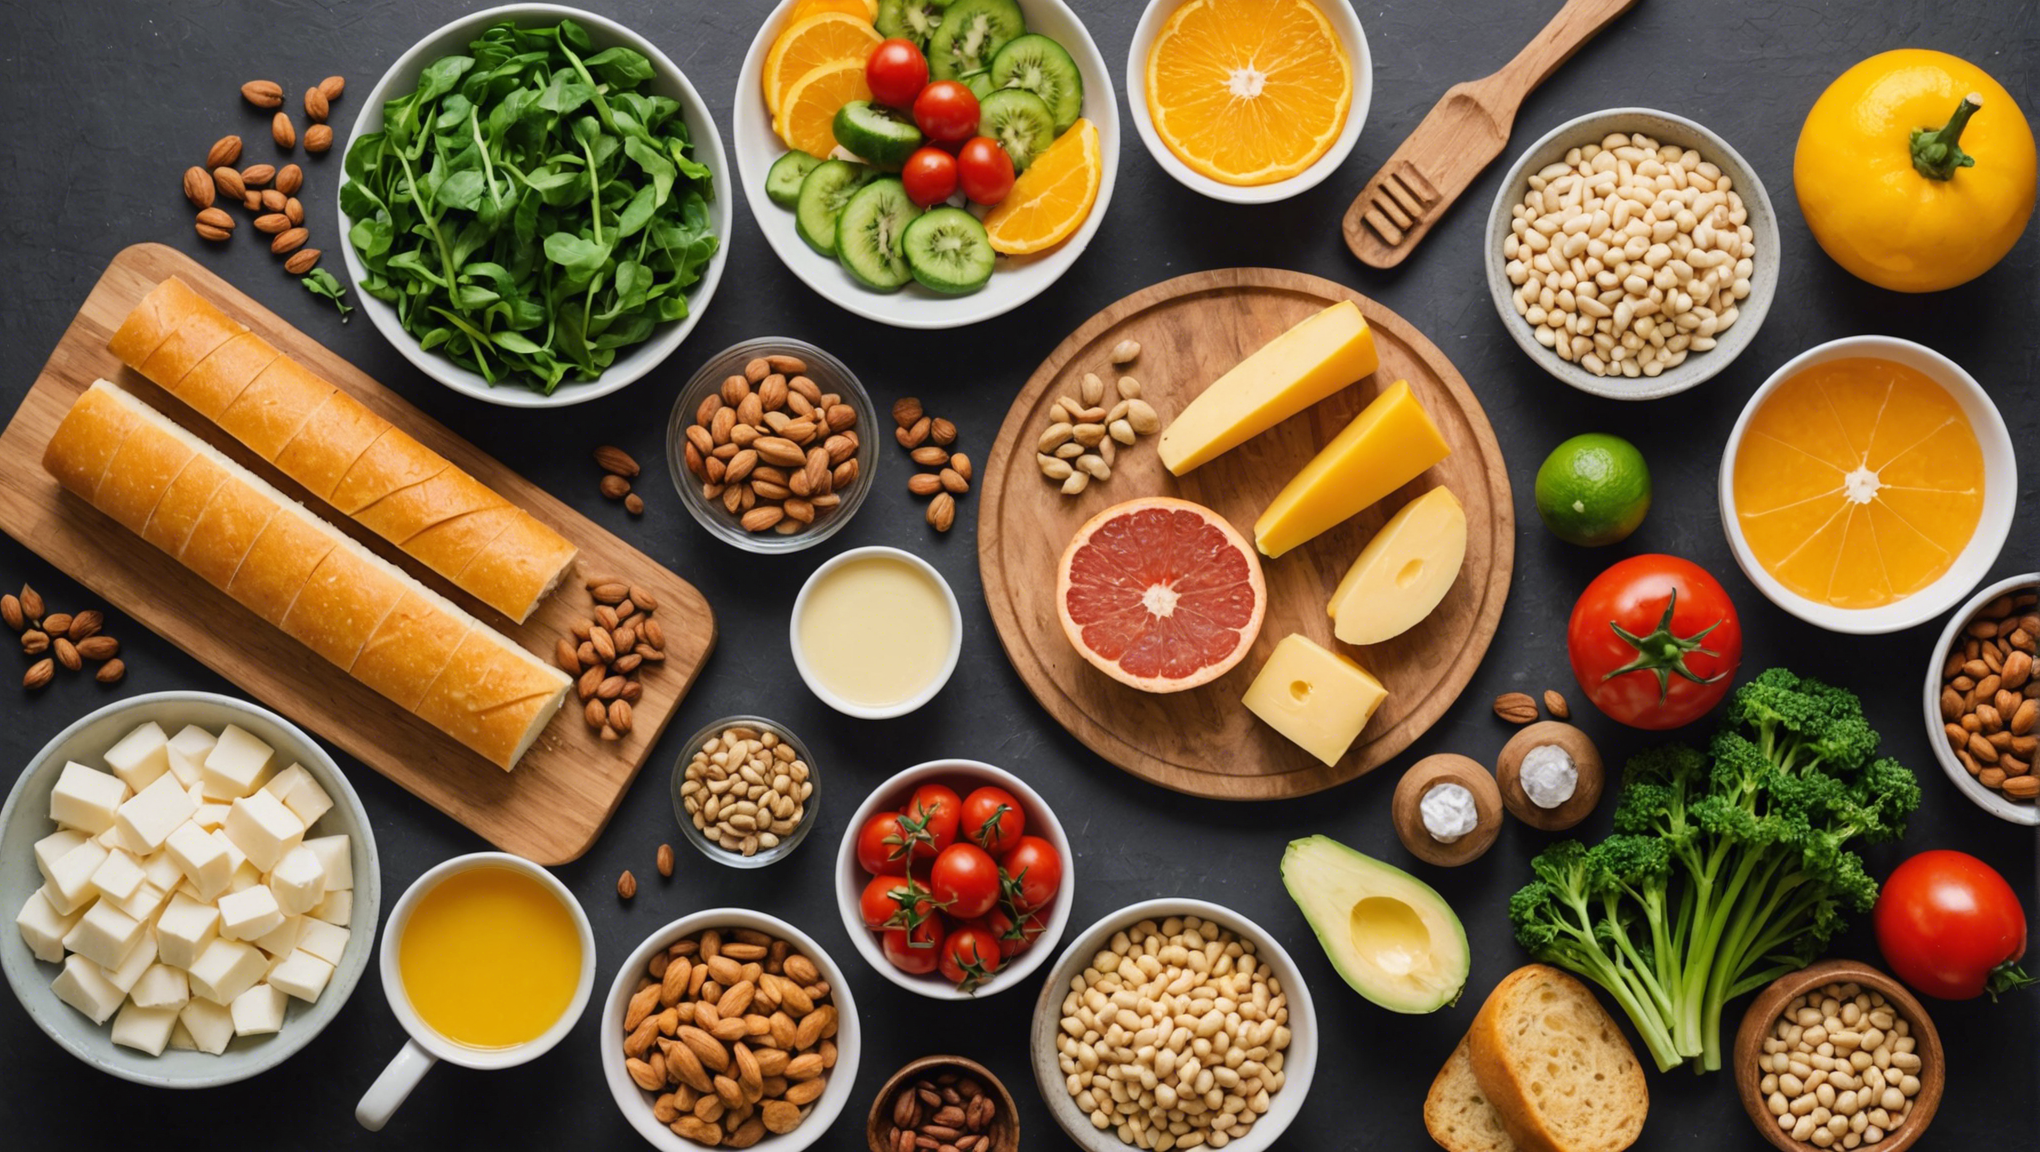 découvrez quels aliments sont riches en vitamine d et comment les inclure dans votre régime alimentaire pour booster votre santé.